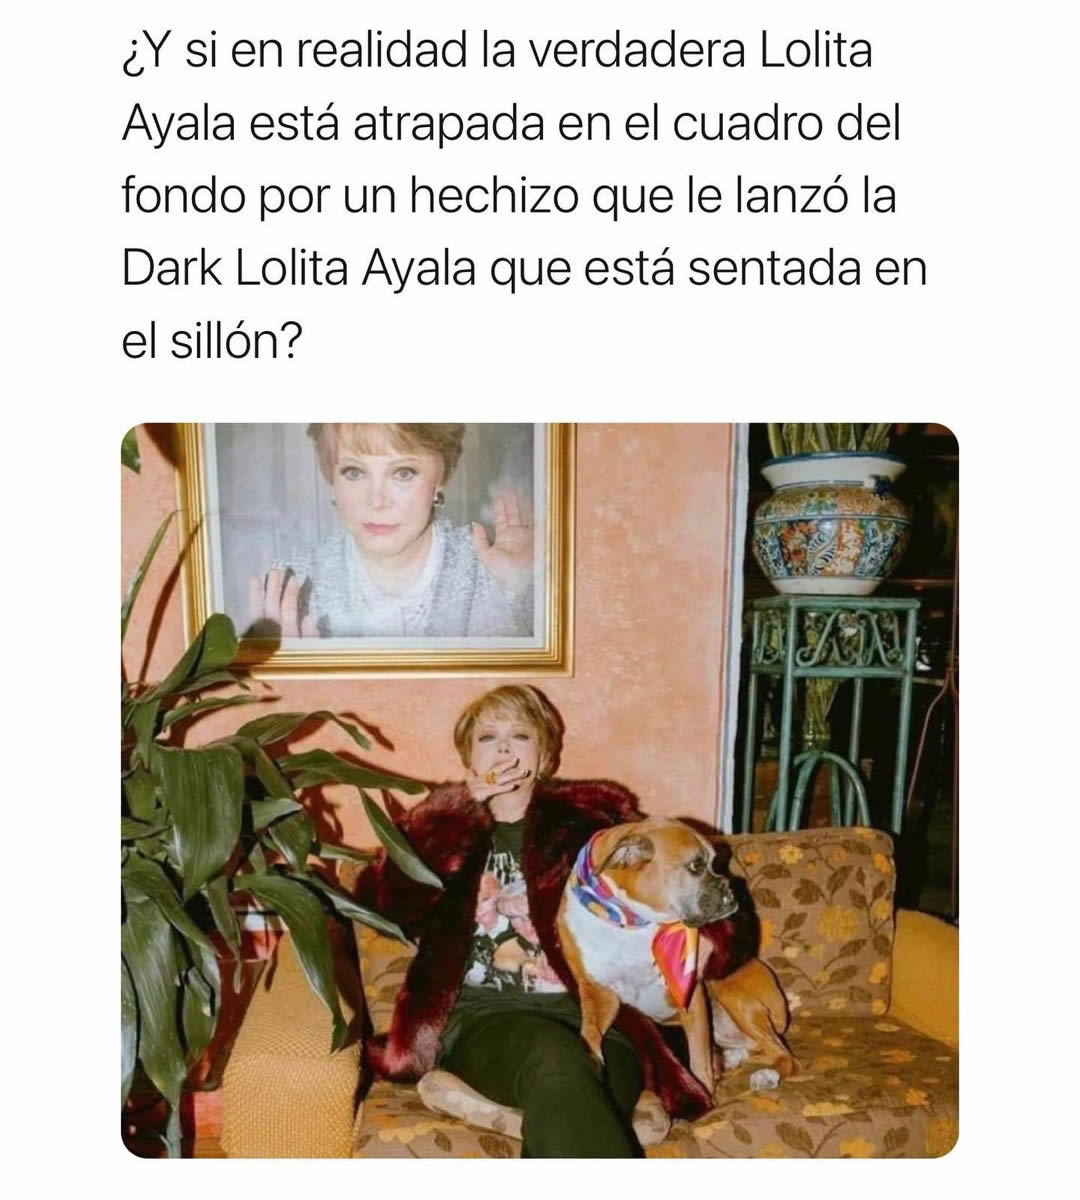 ¿Y si en realidad la verdadera Lolita Ayala está atrapada en el cuadro del fondo por un hechizo que le lanzó la Dark Lolita Ayala que está sentada en el sillón?